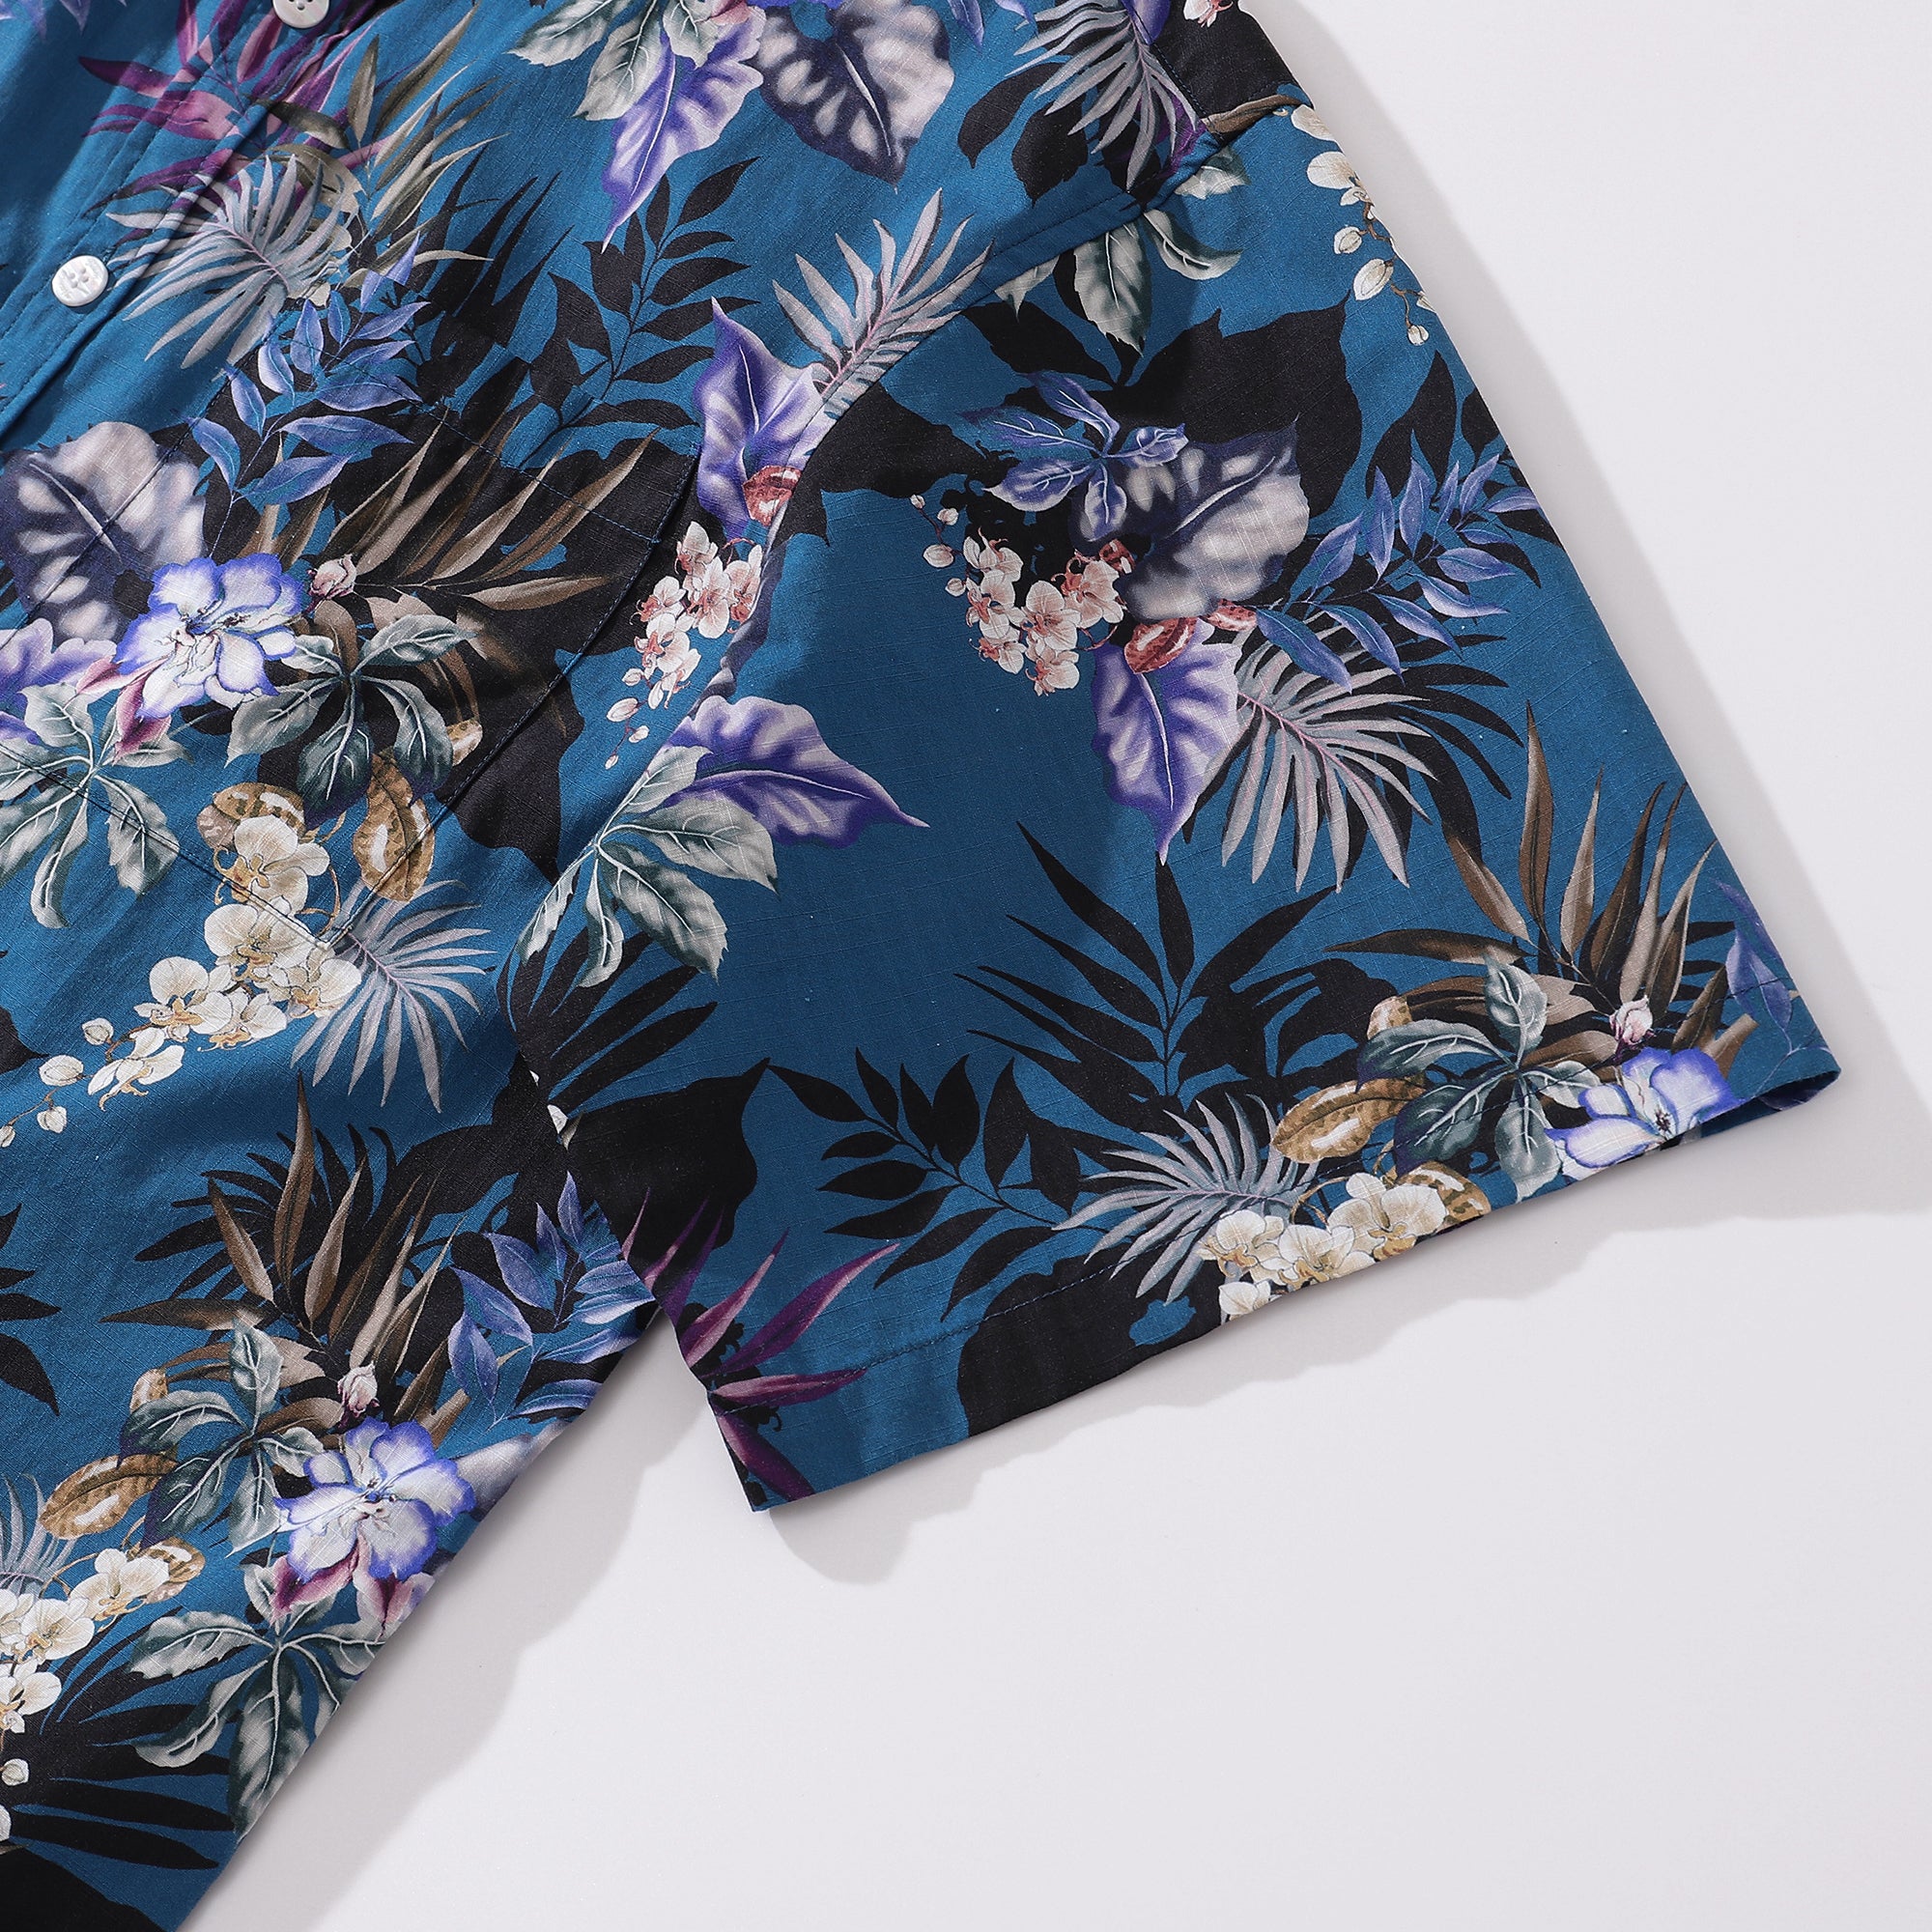 Chemise boutonnée 100% coton à imprimé floral orchidée peinte à la main bleu foncé